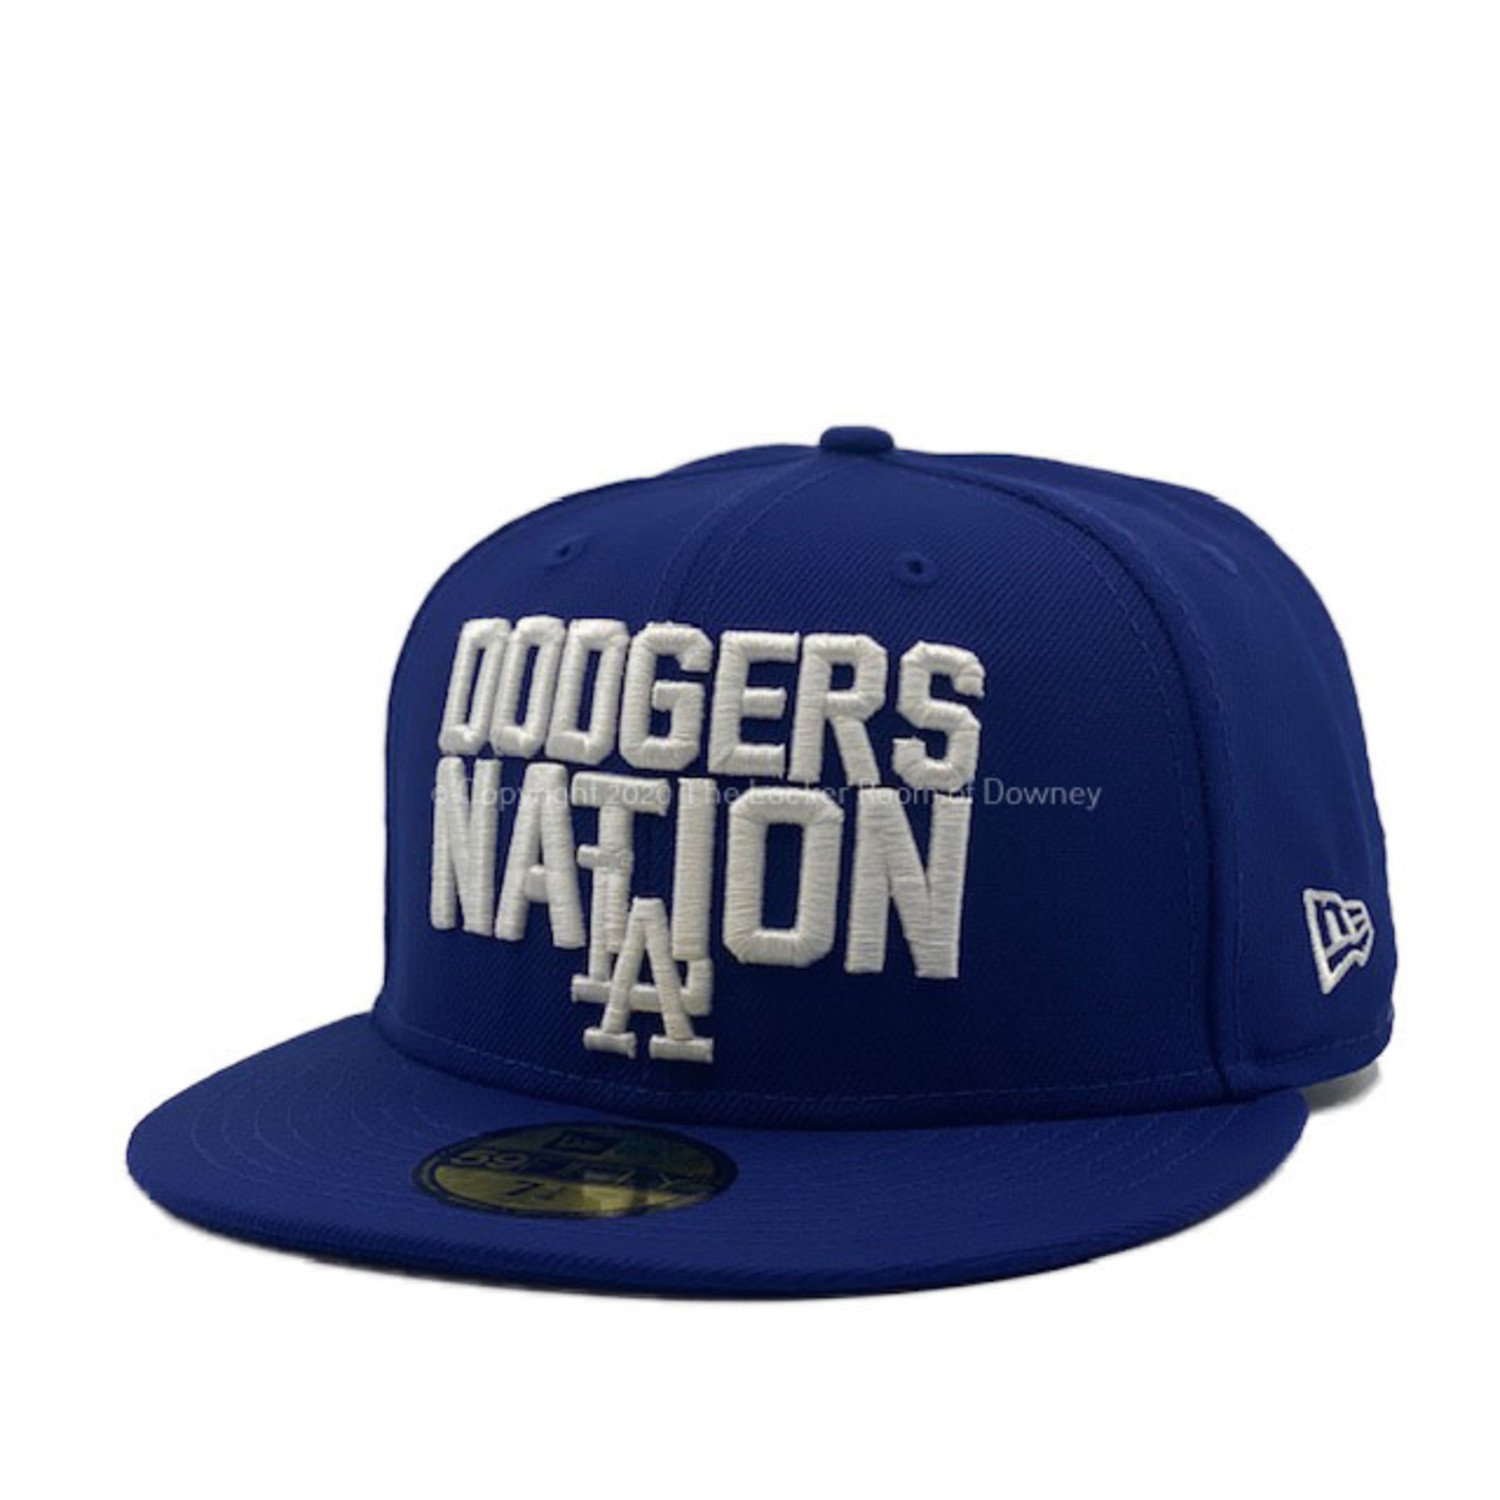 La Dodgers  Dodgers nation, Dodgers baseball, Dodgers